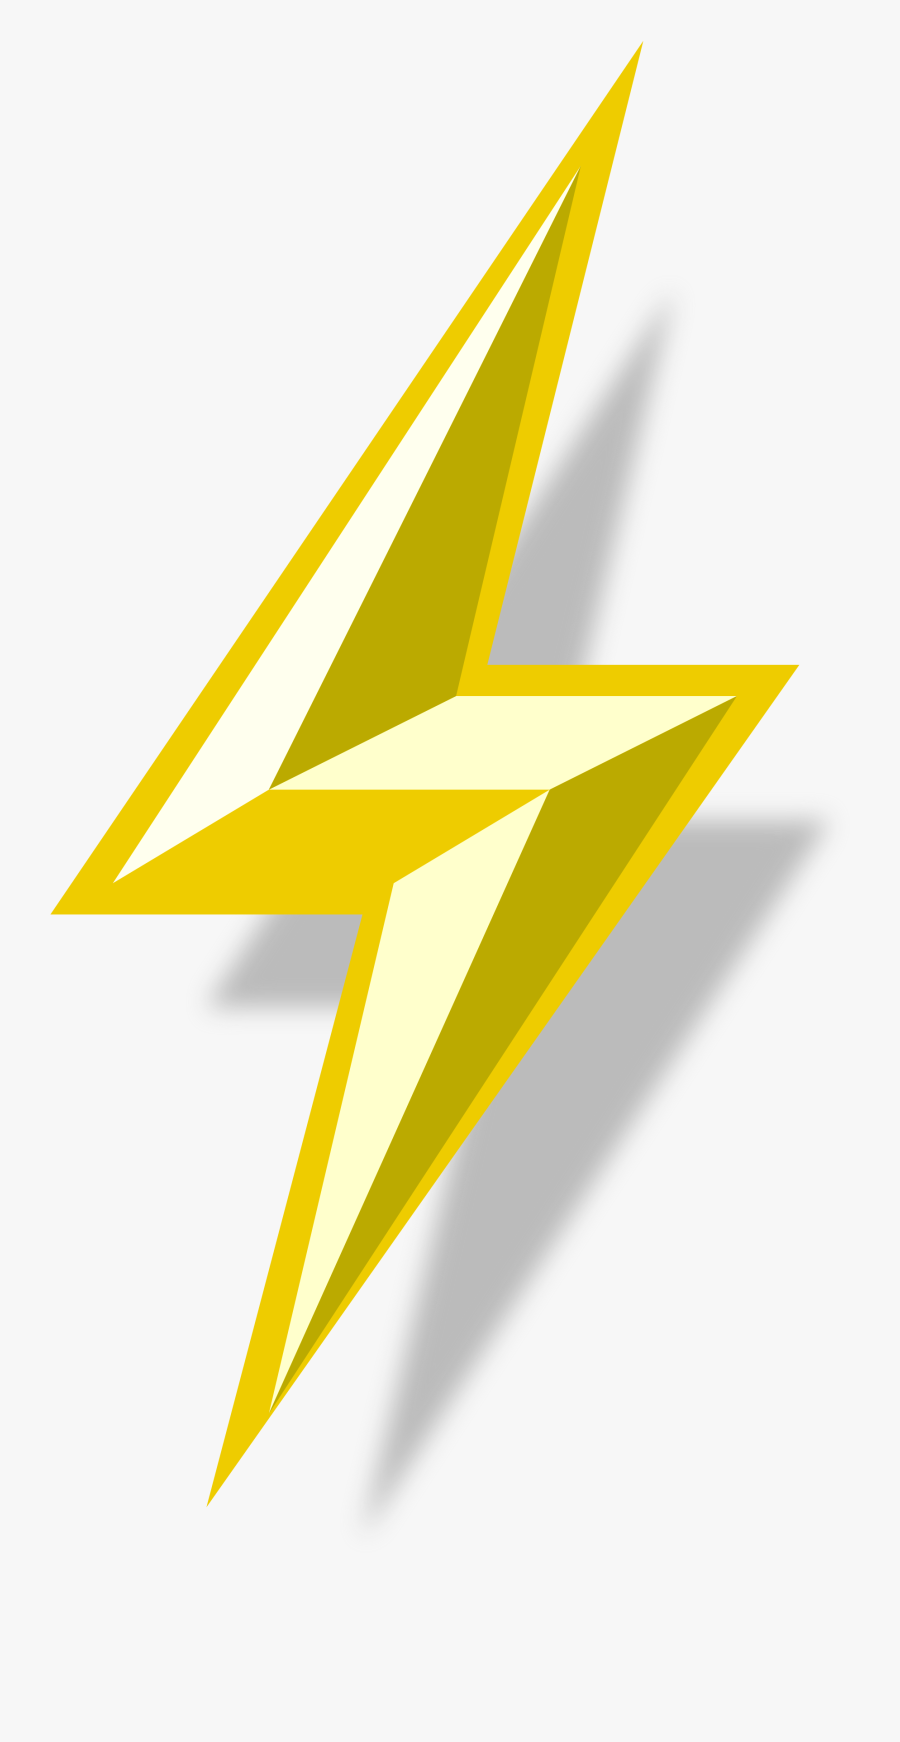 Clip Art Image Of Lightning Bolt - Transparent Lightning Bolt Vector, Transparent Clipart